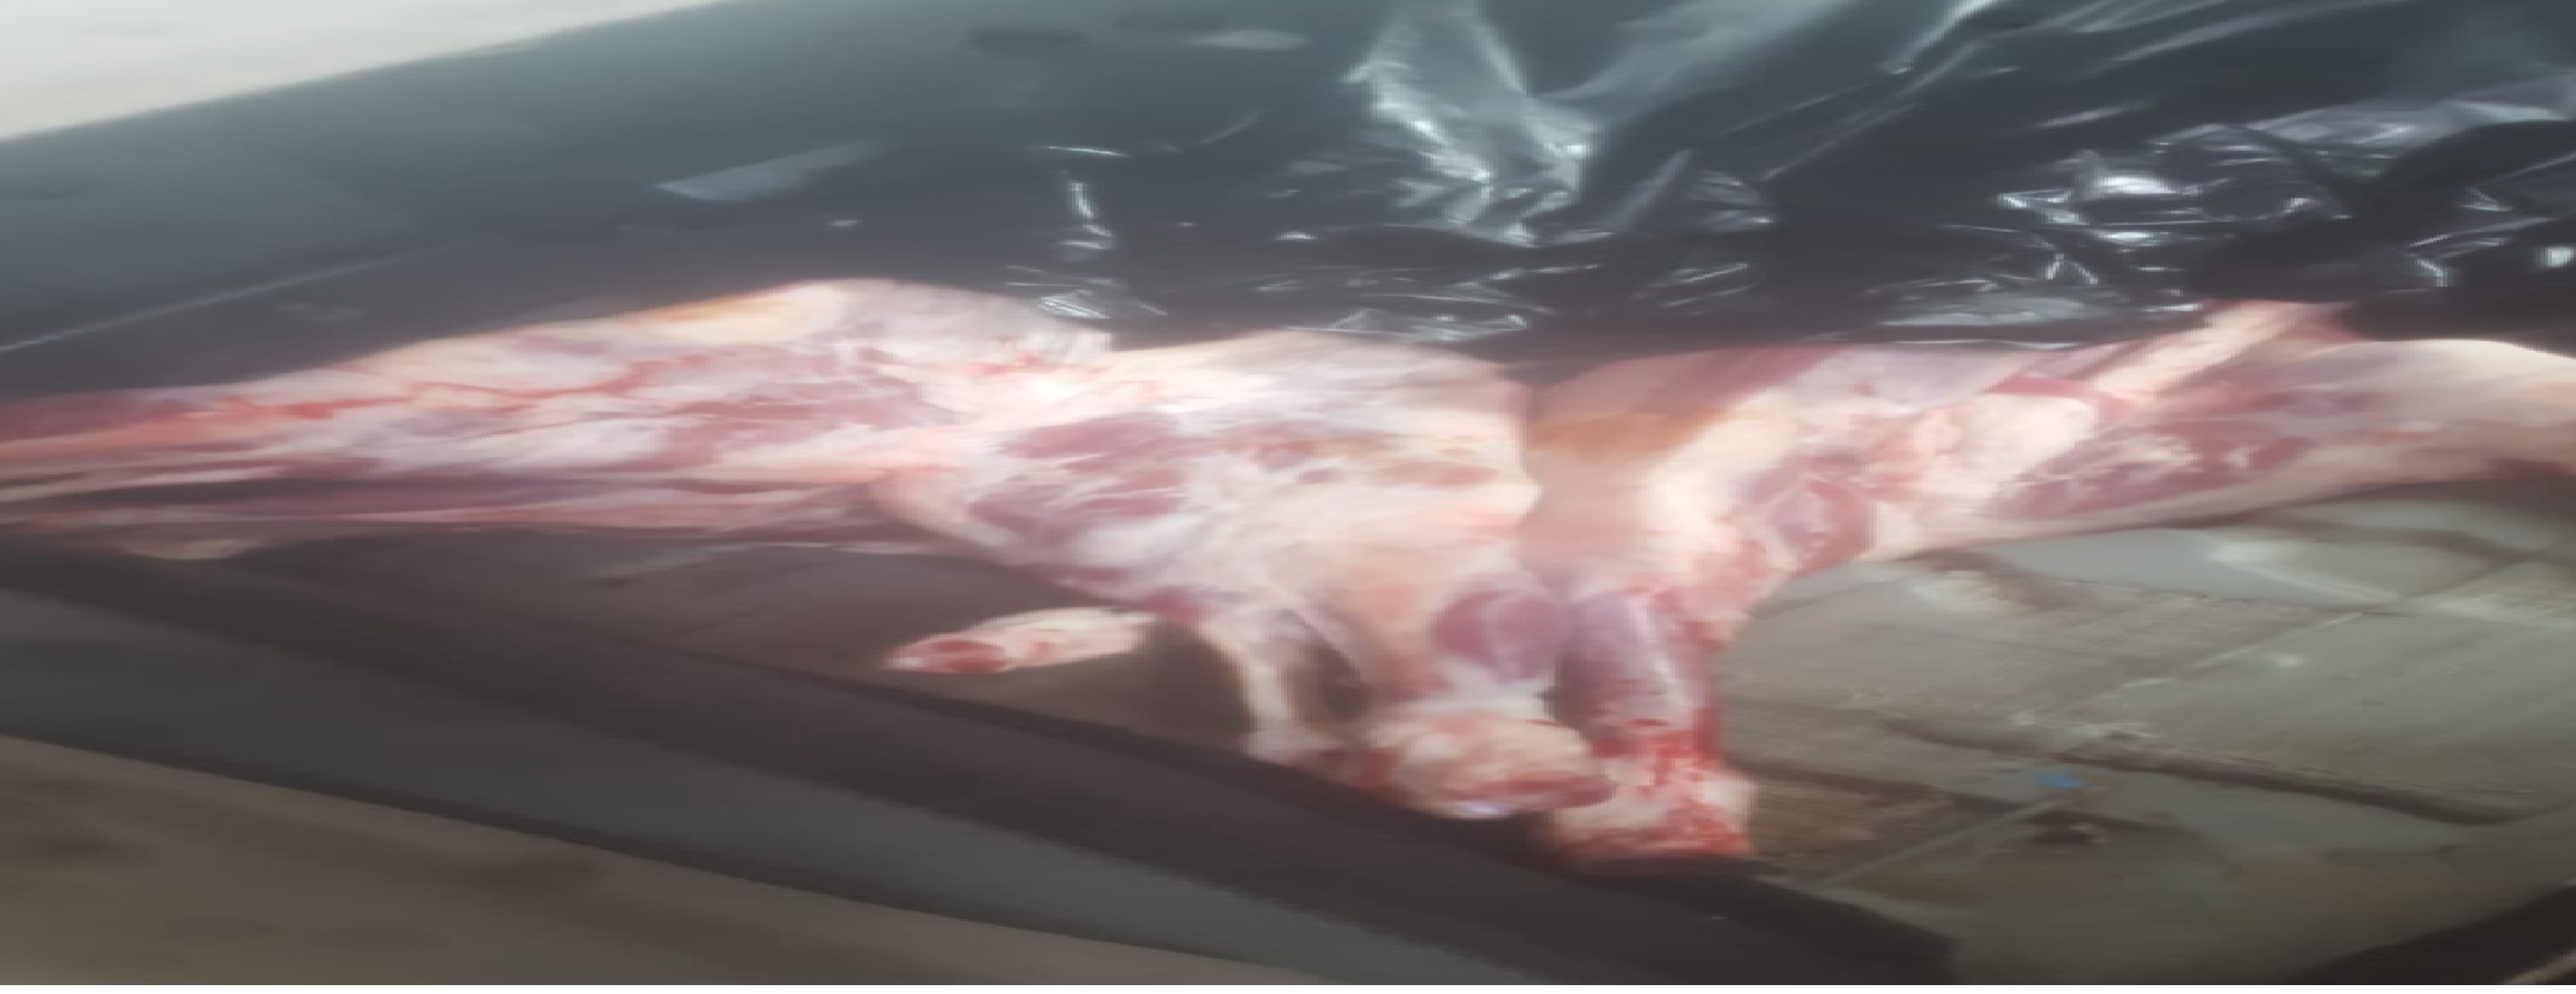 Metehan Kara Giriş Kapısında gümrüğe beyan edilmemiş 350 kg kemiksiz dana eti ve 90 kg kuzu bannası